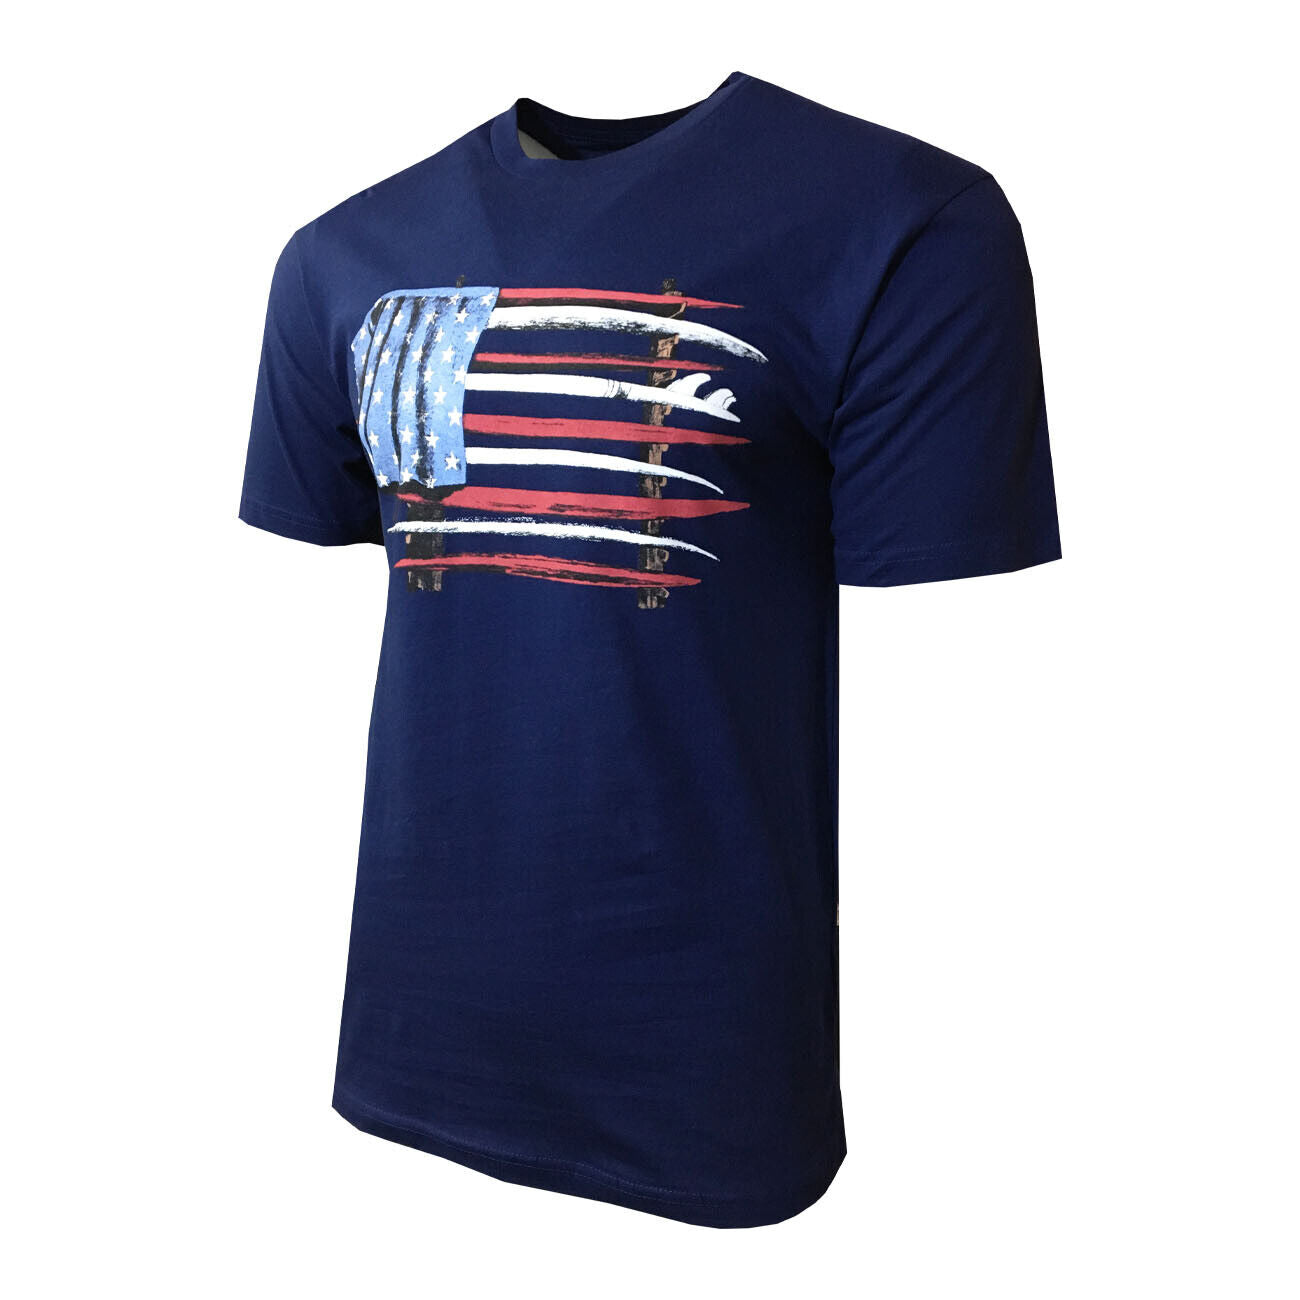 Joe Marlin Unwind American Surfboard Flag T-Shirt -